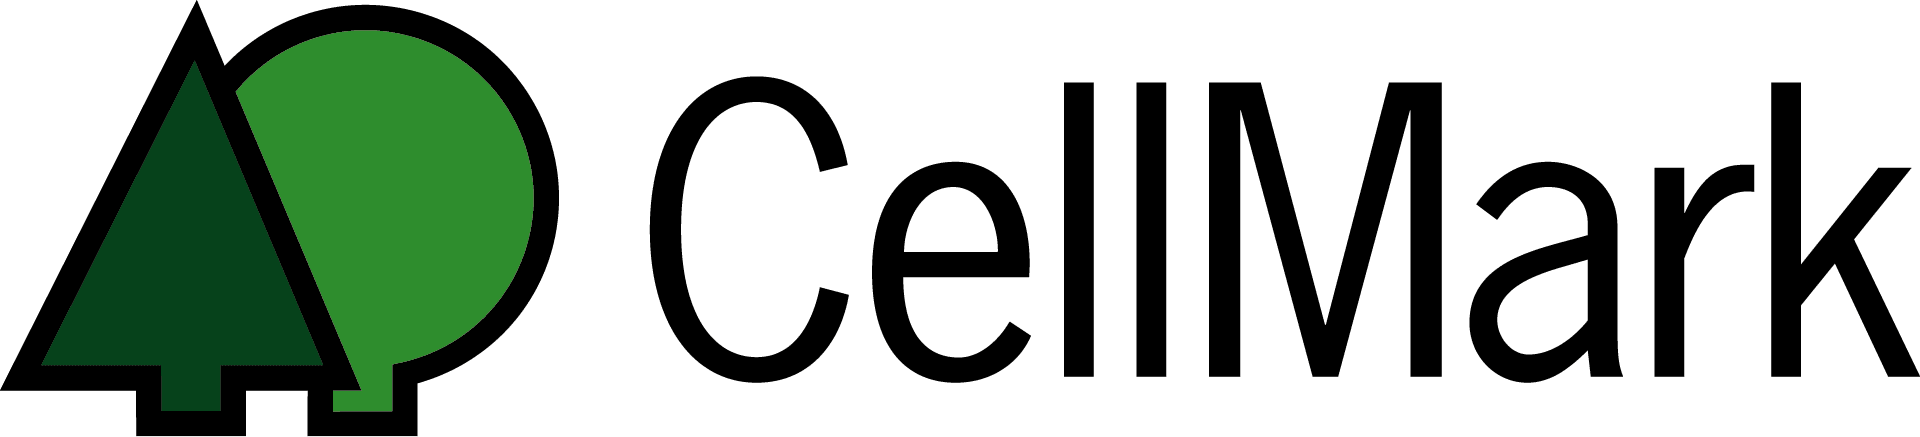 cellmark-logo